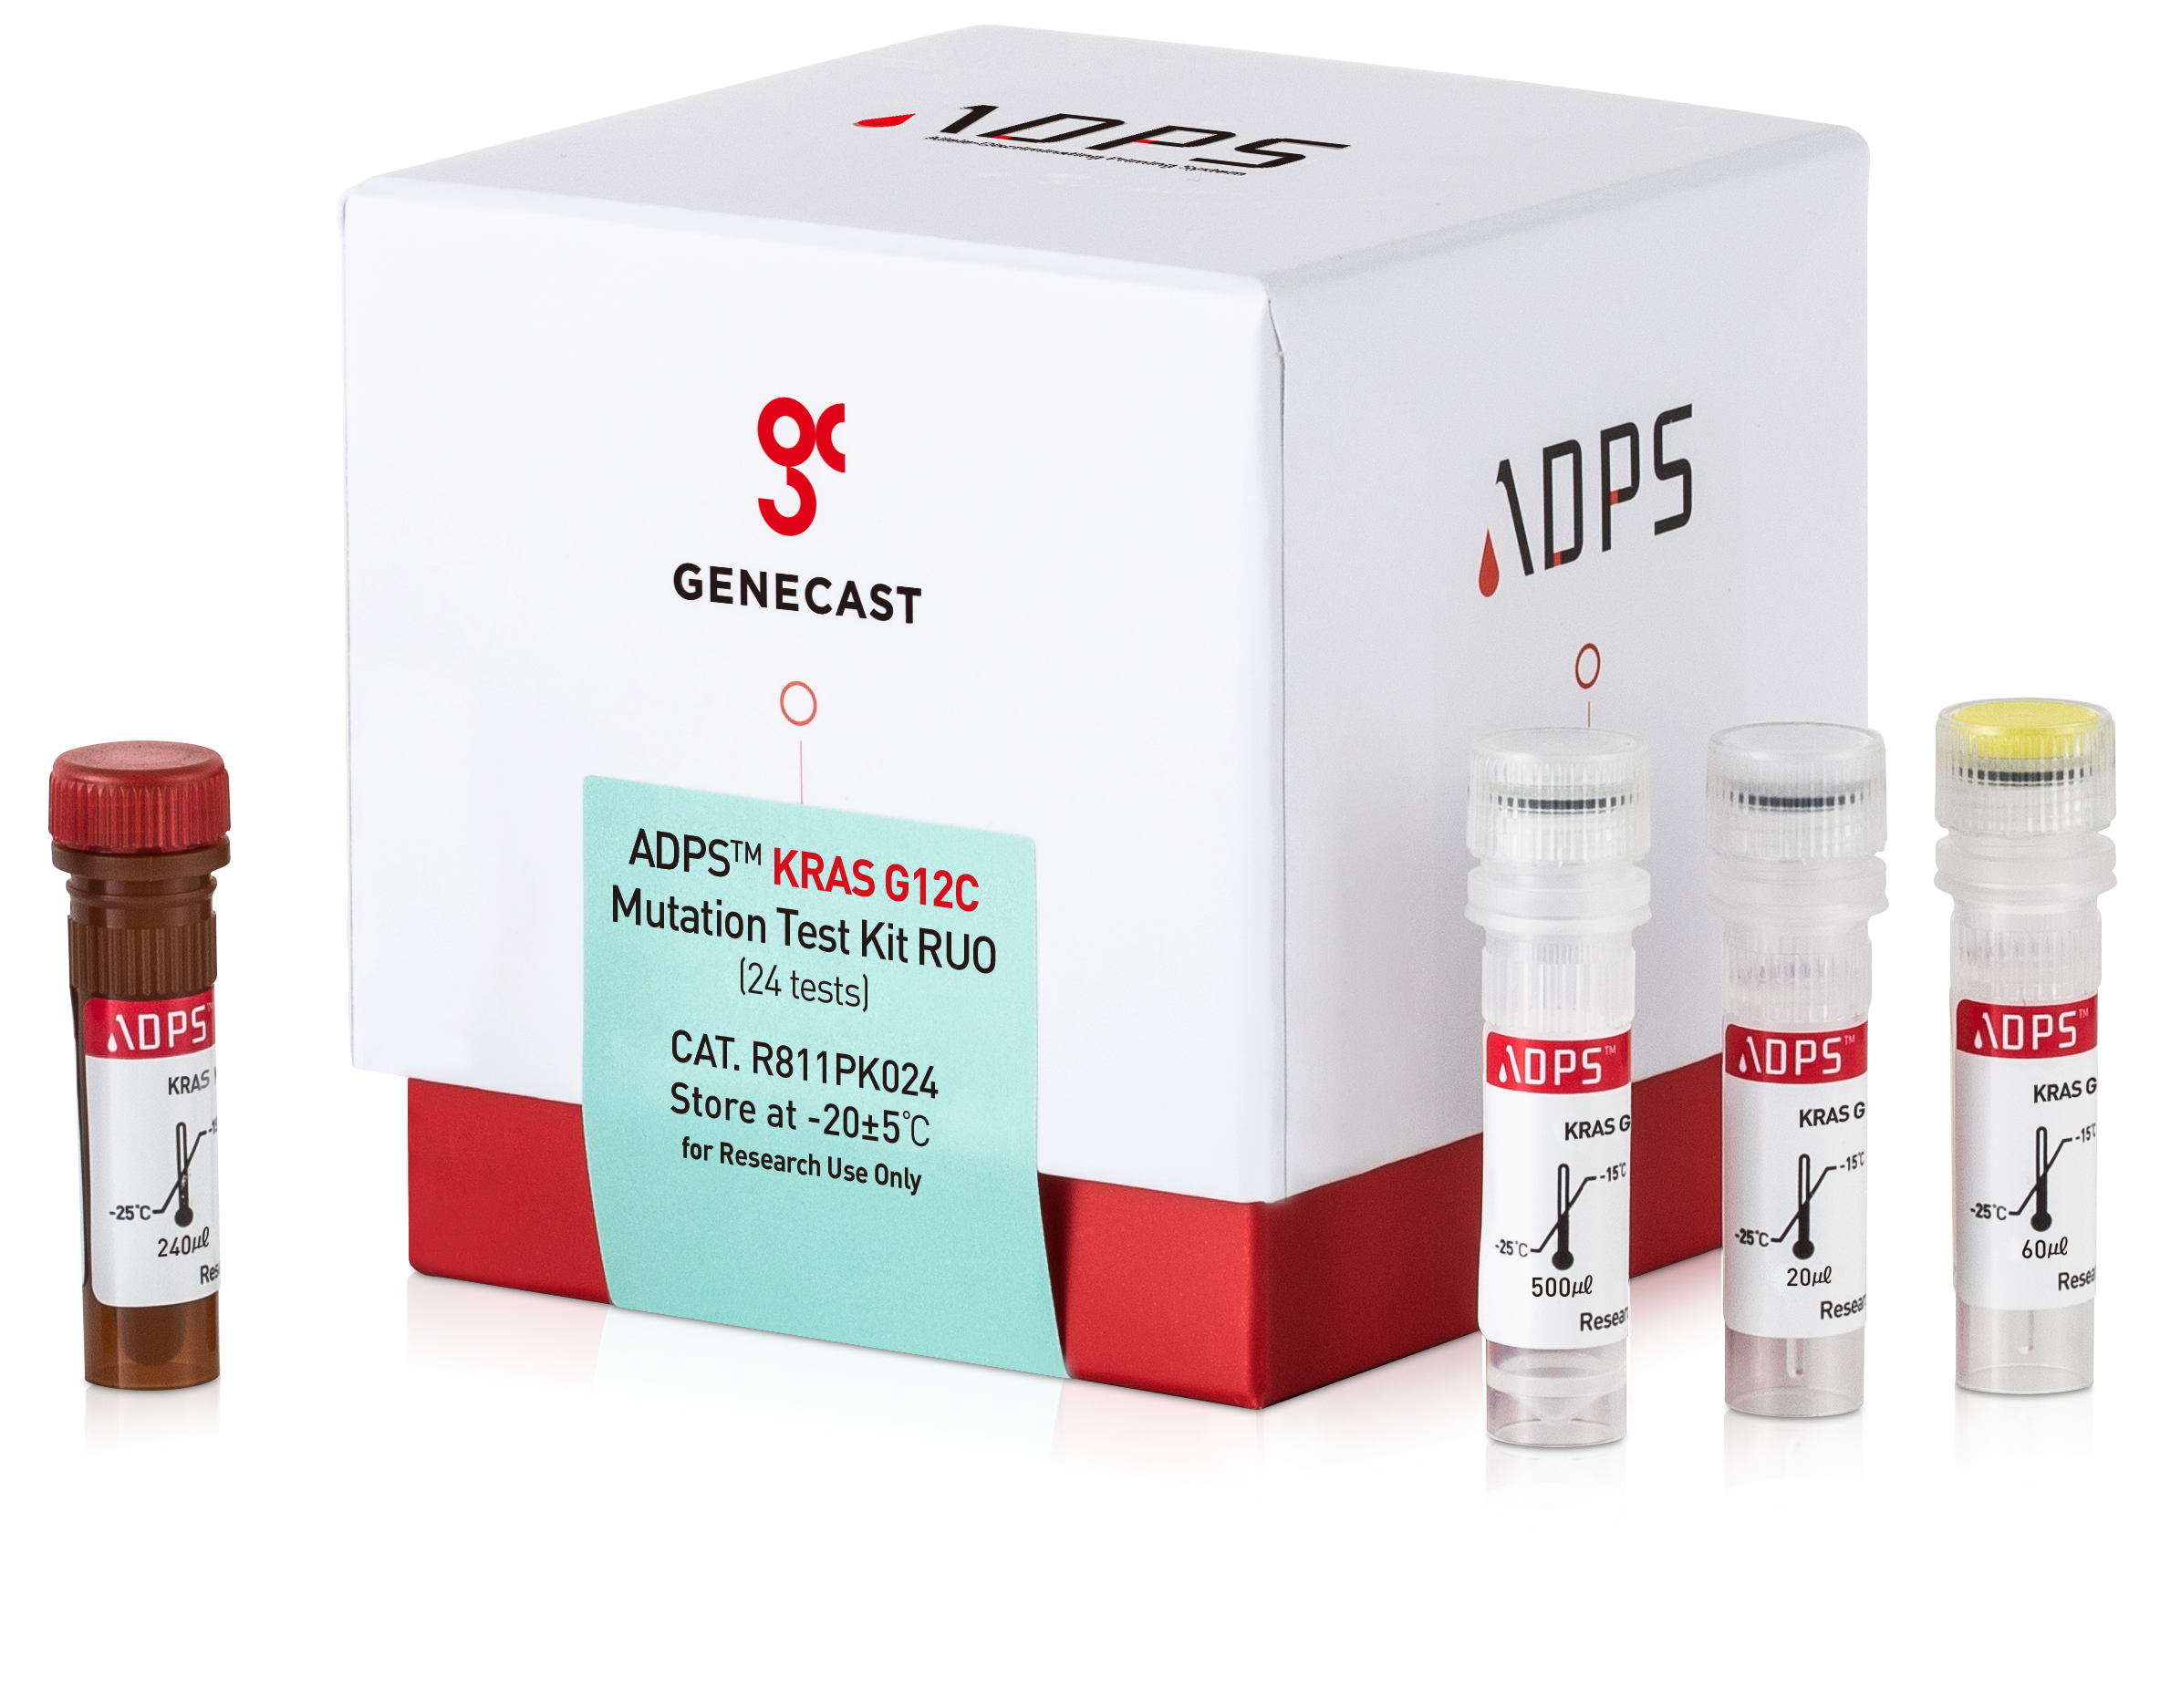 GNECAST ADPS KRAS G12C Mutation test kit Demo.png